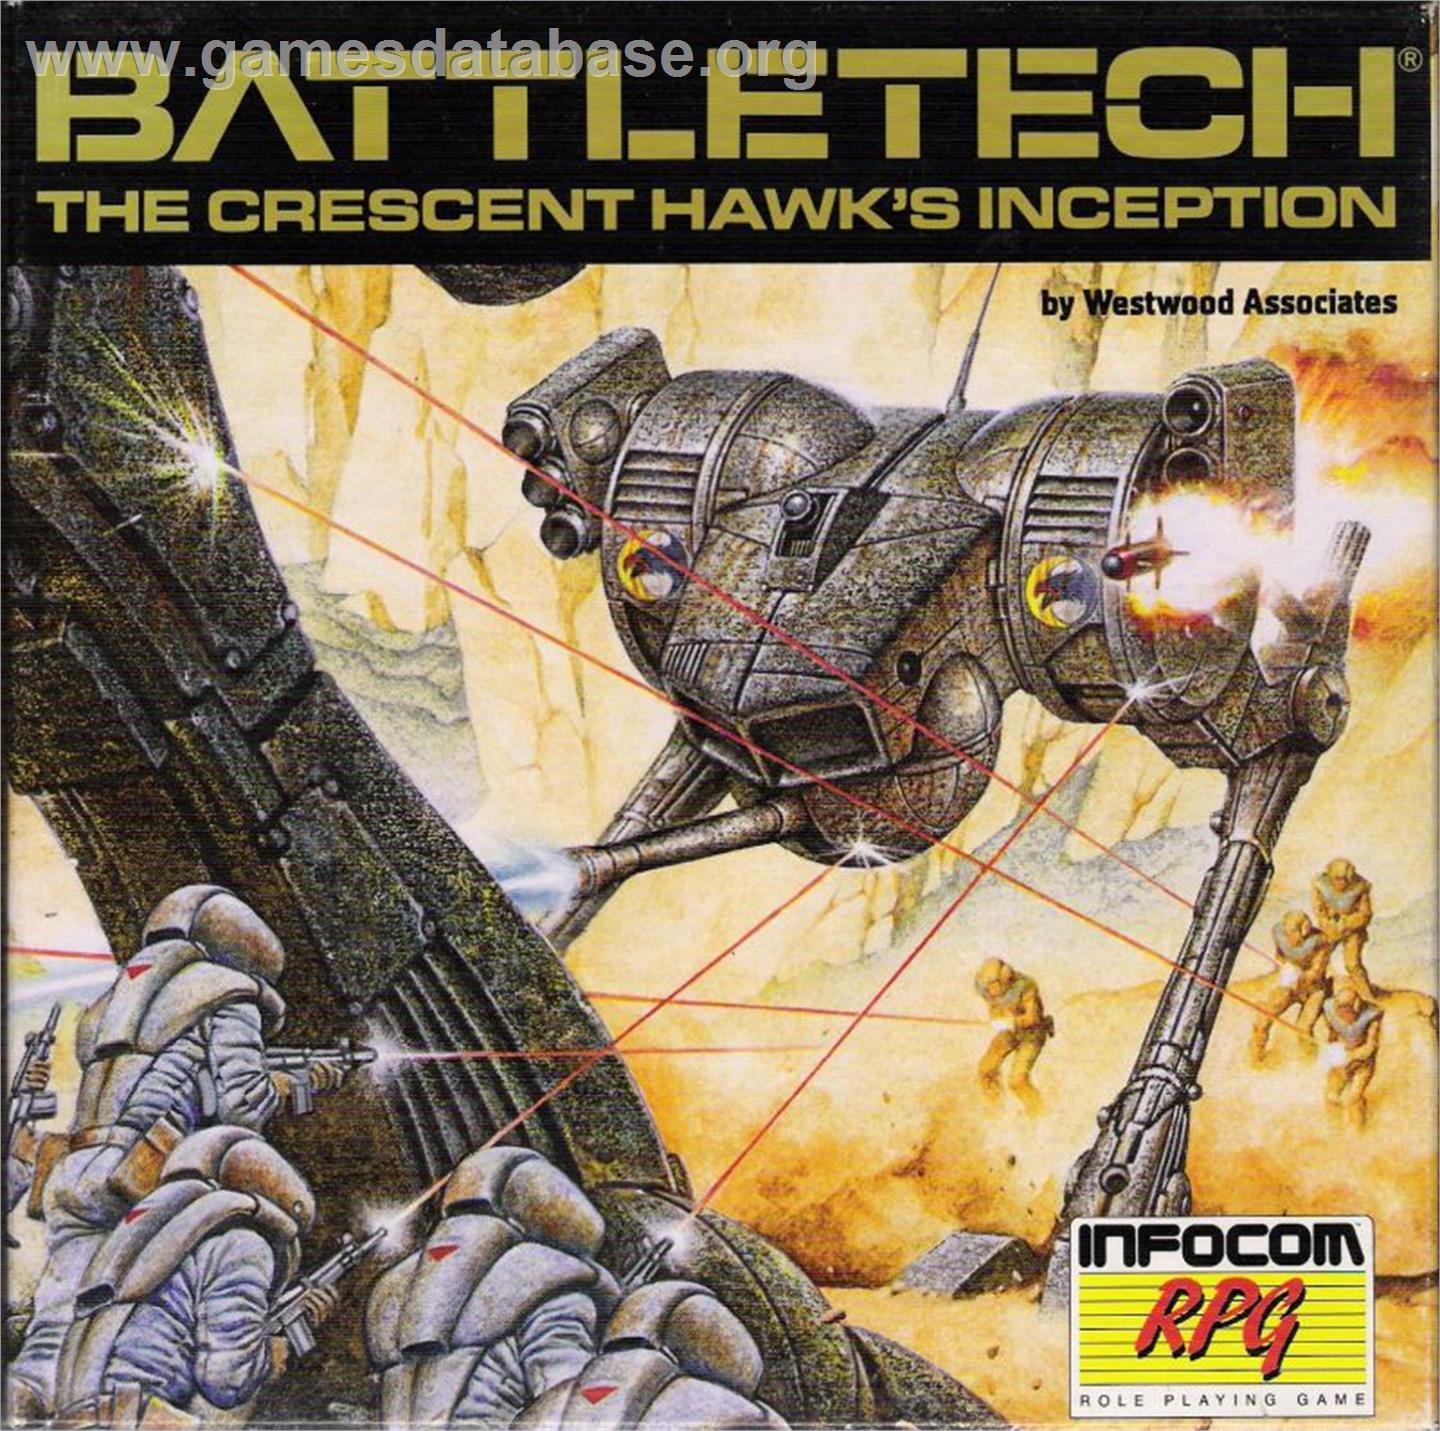 BattleTech: The Crescent Hawk's Inception - Commodore 64 - Artwork - Box